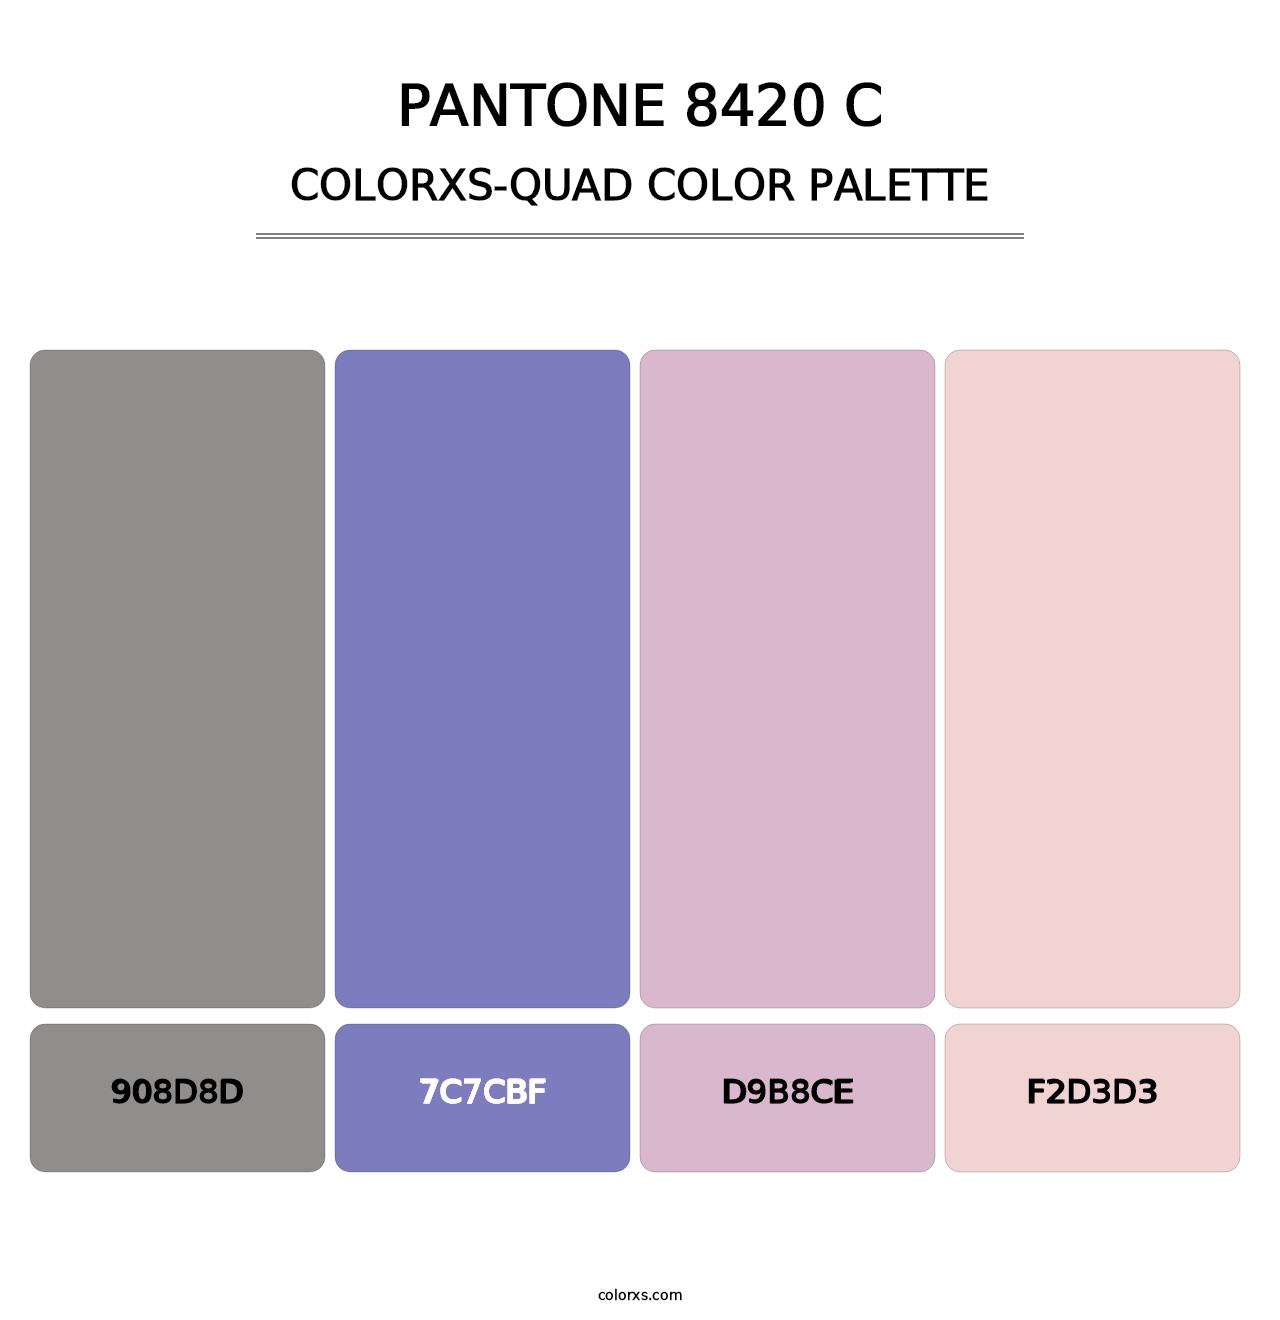 PANTONE 8420 C - Colorxs Quad Palette